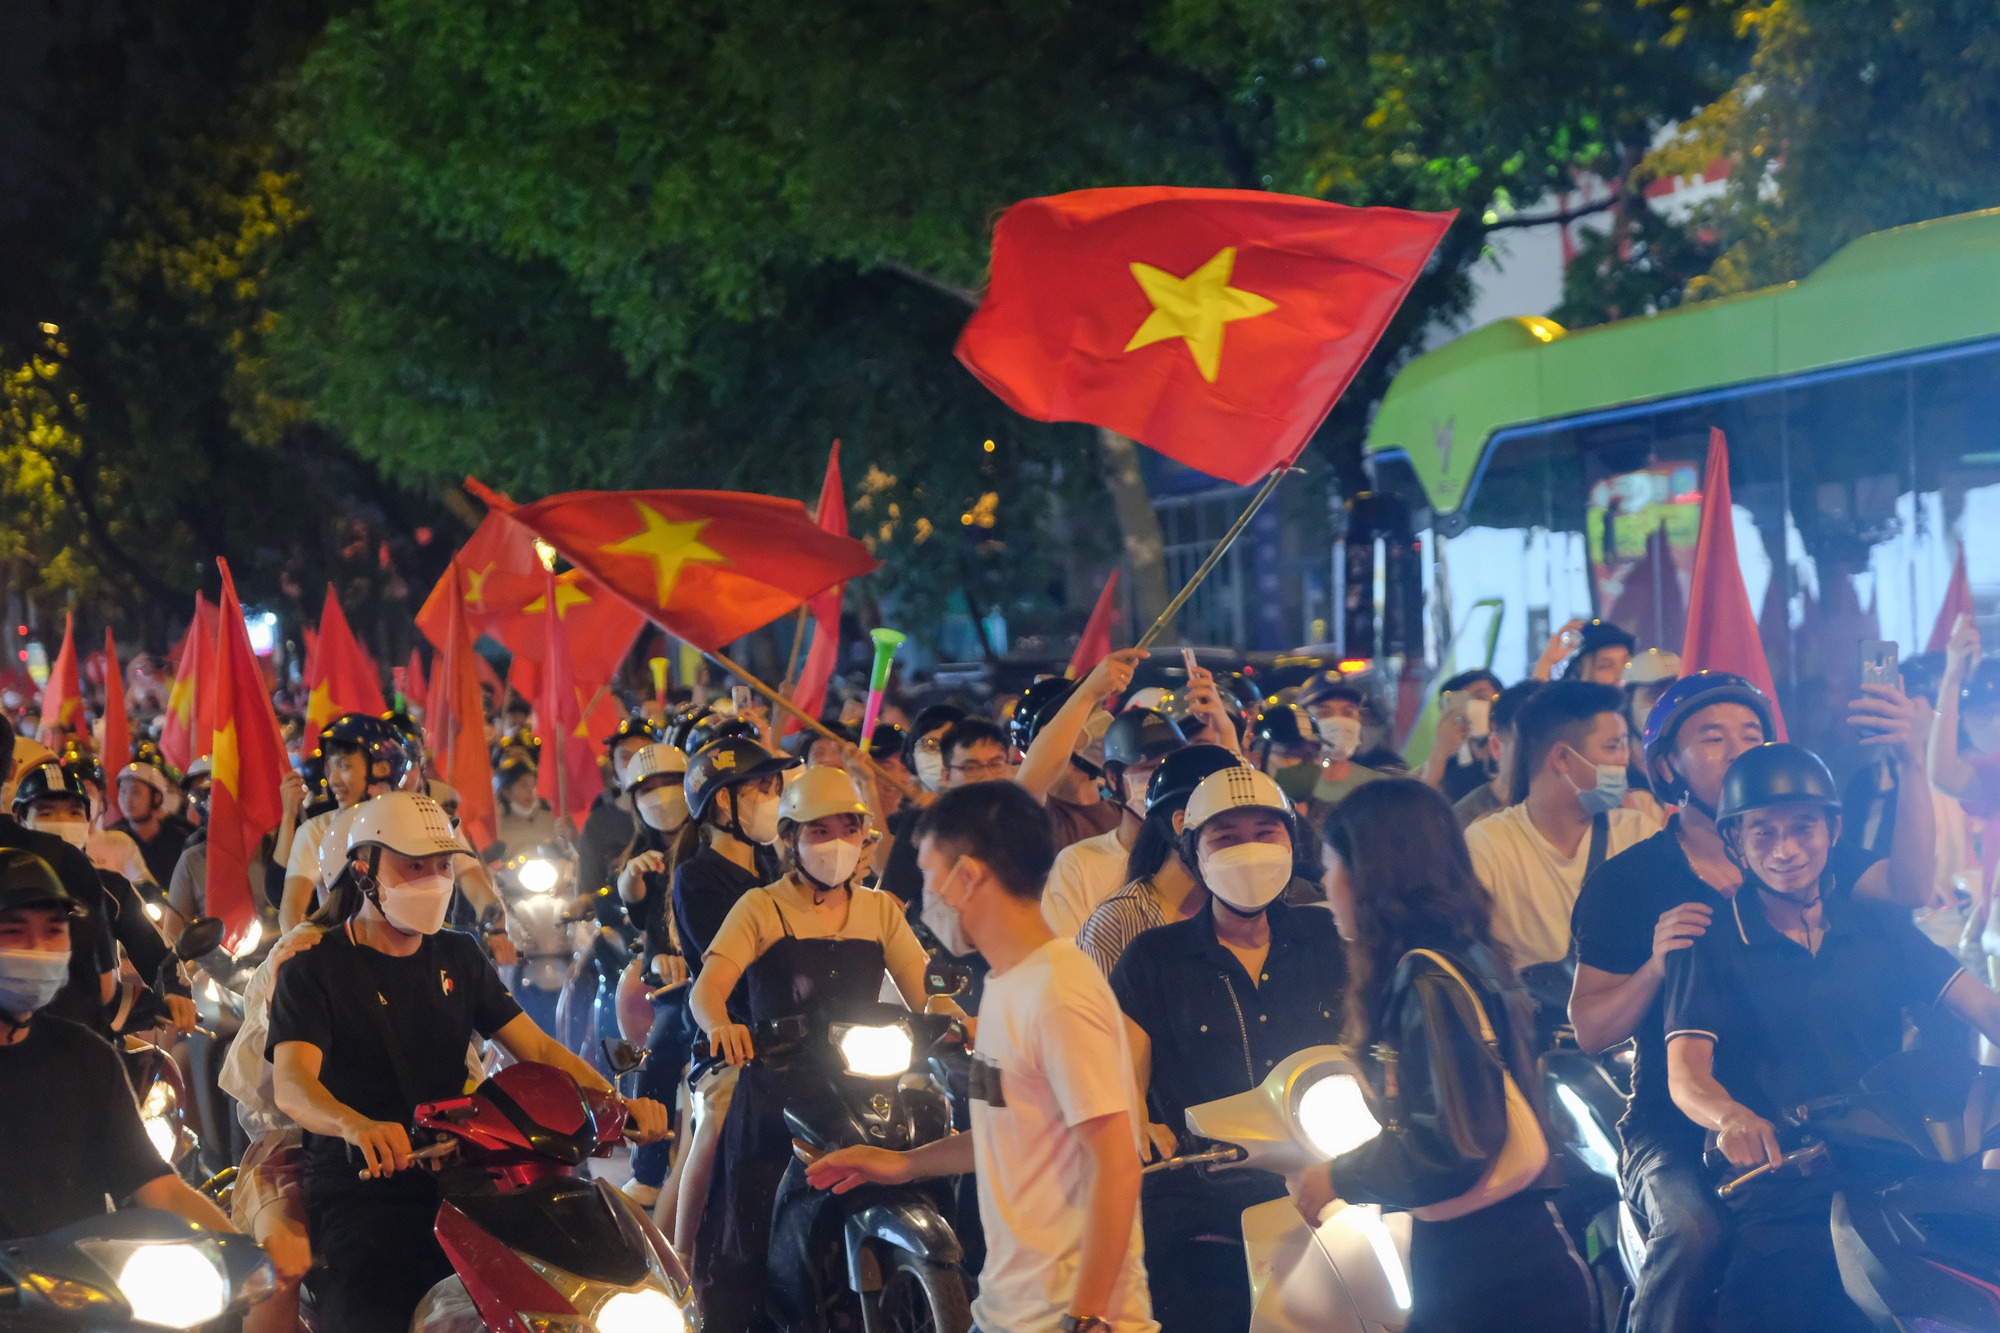 Đêm U23 Việt Nam giành HCV SEA Games trả món nợ với người Thái, người dân cả nước xuống đường nhuộm đỏ mọi tuyến phố - Ảnh 5.